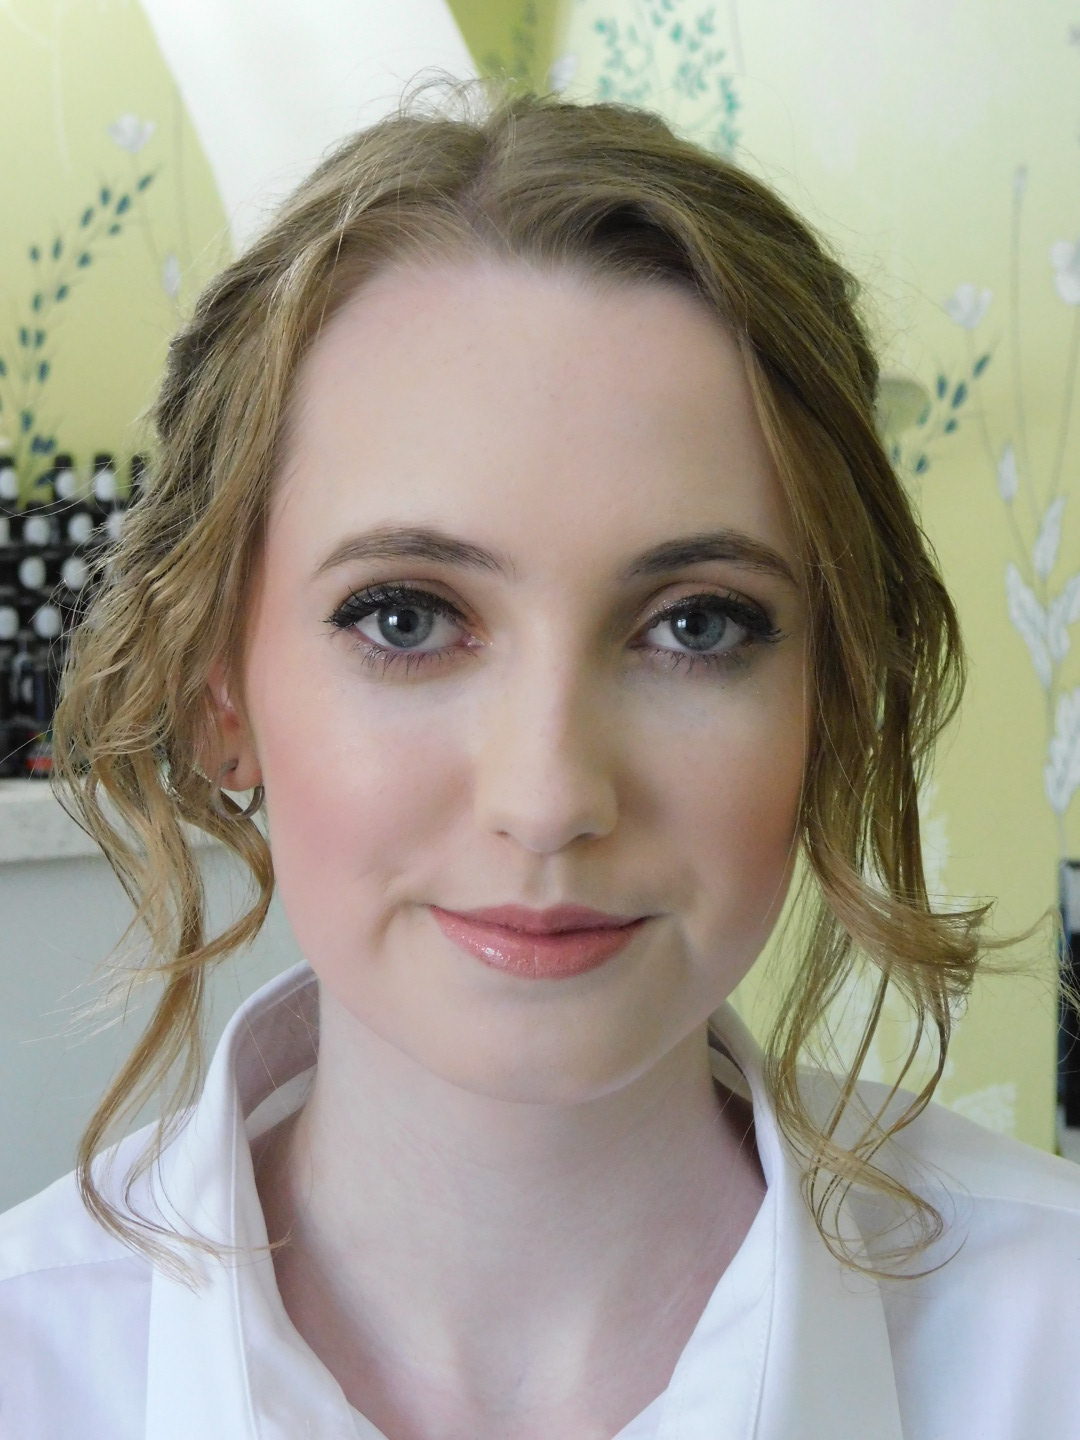 Prom makeup Chippenham by Rachel Neate Makeup & Hair